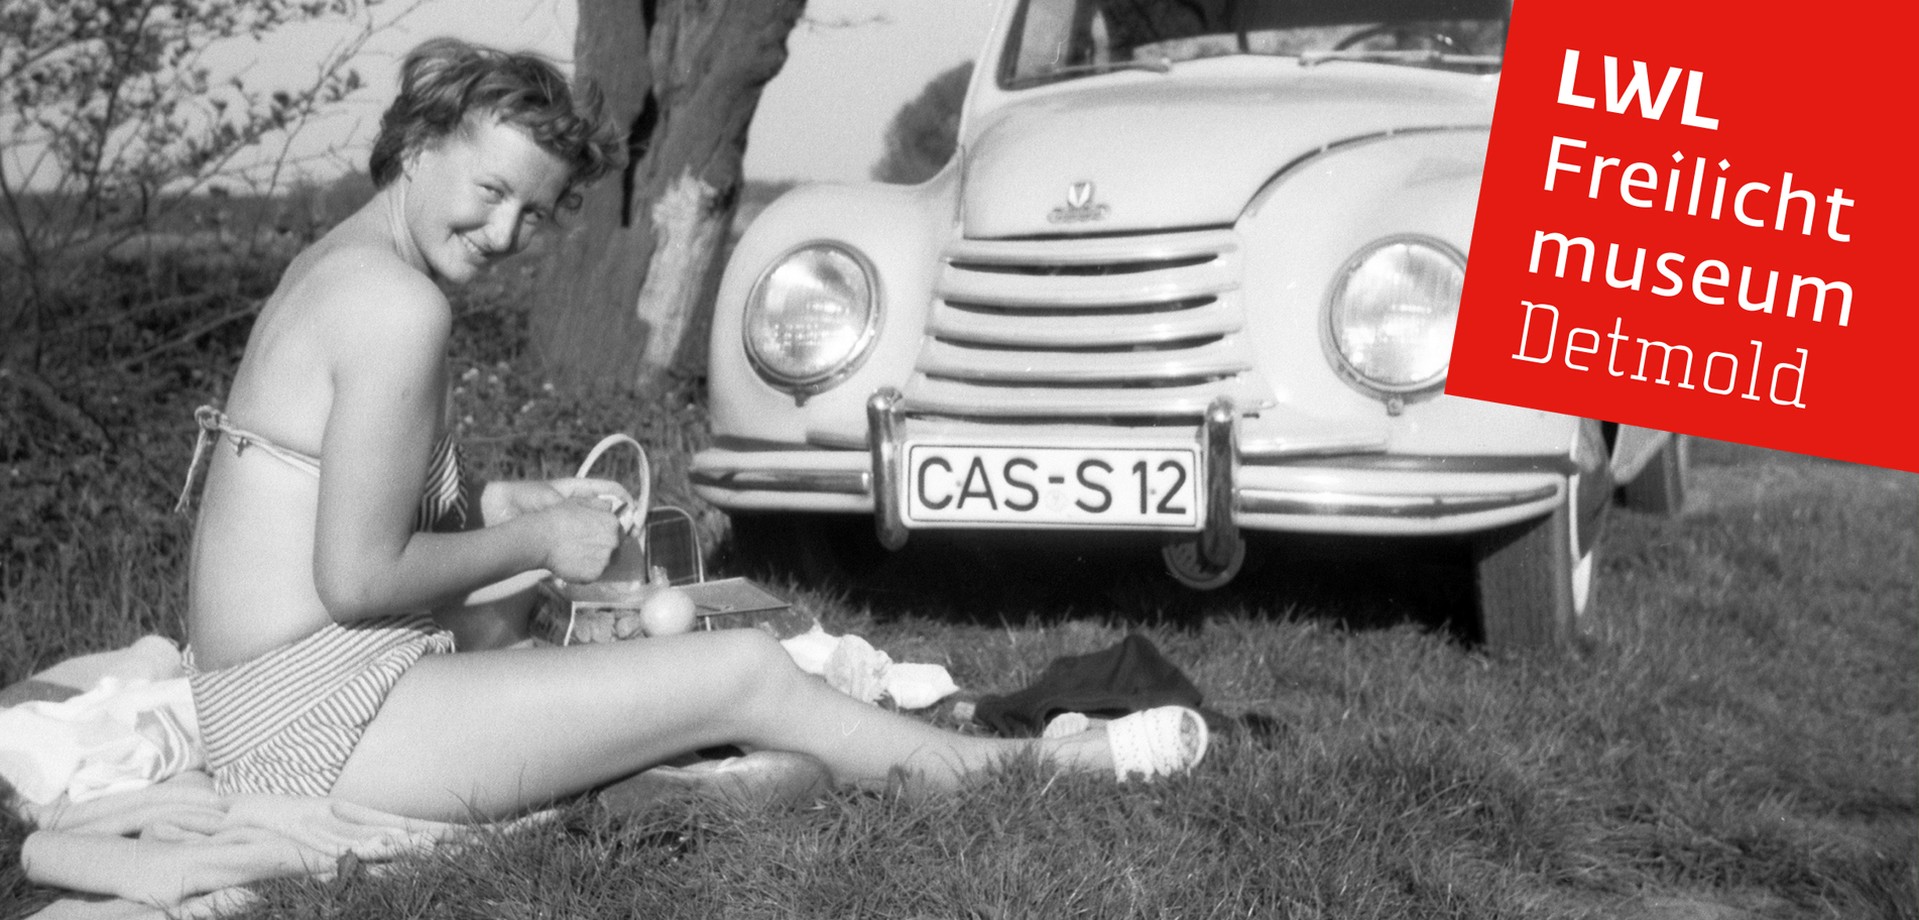 Eine Frau im Bikini, die auf einer Wiese sitzt. Neben ihr ein historisches Auto